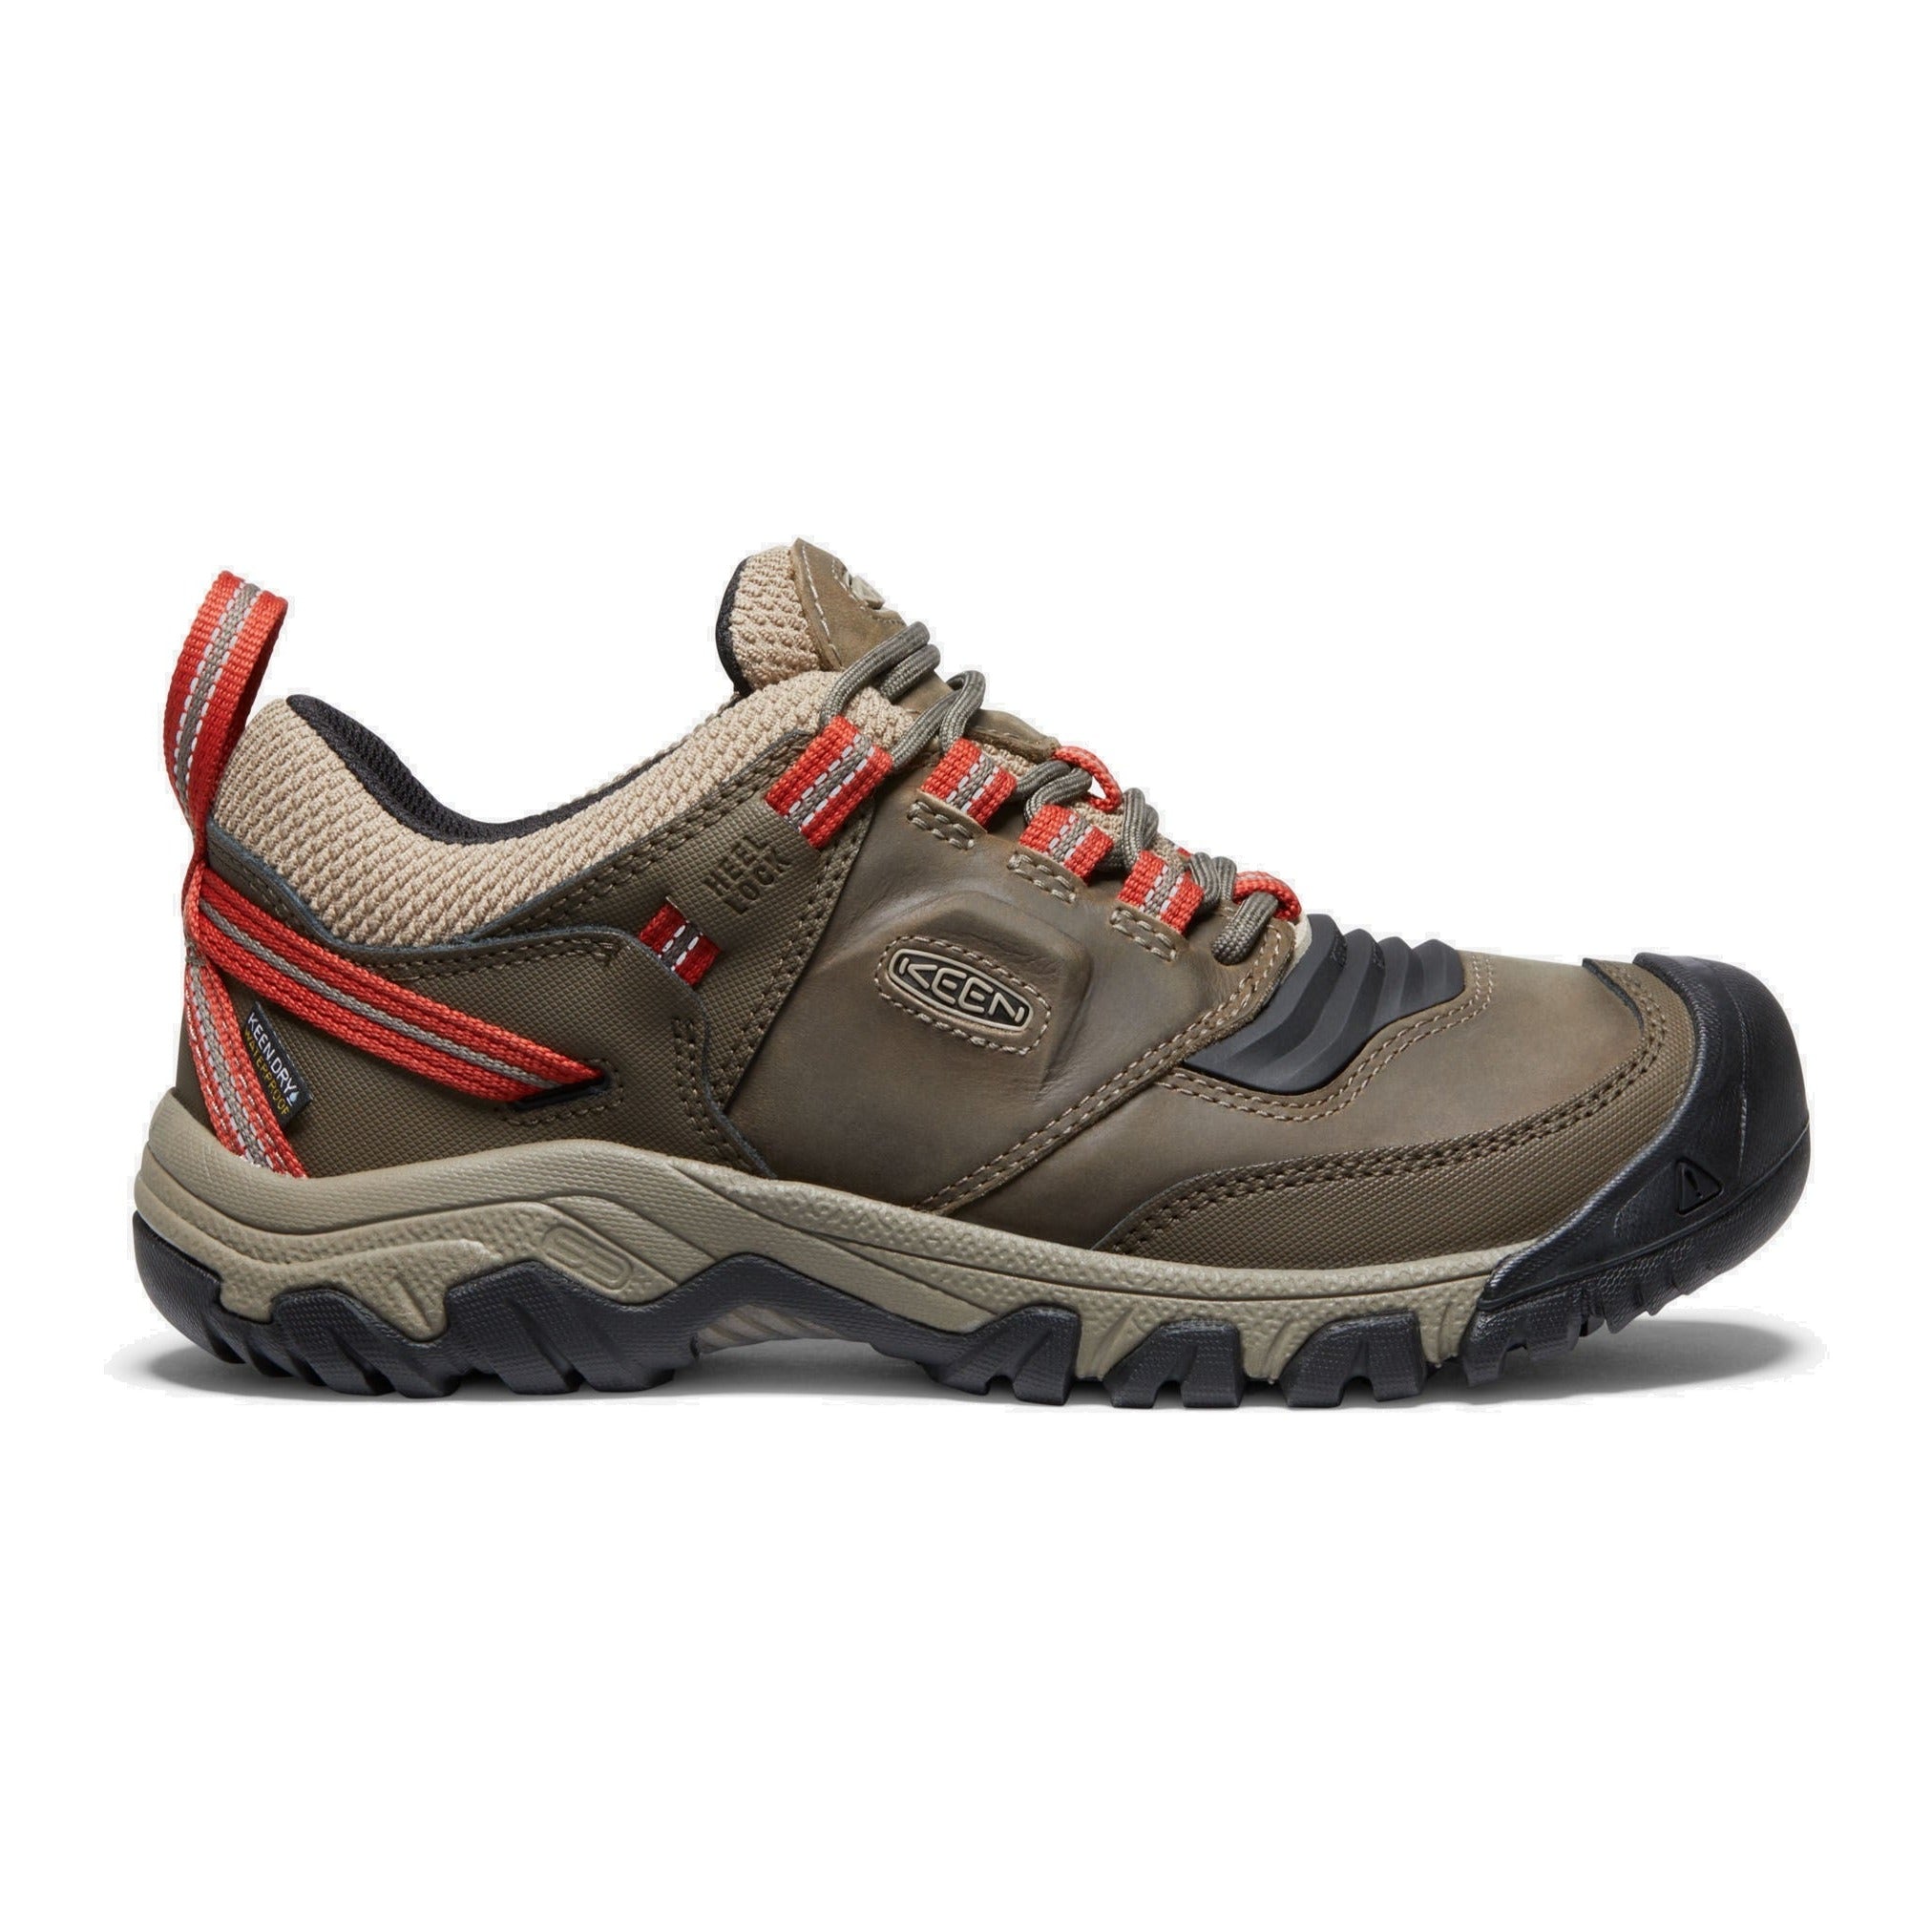 keen men's shoe ridge flex waterproof timberwolf brown